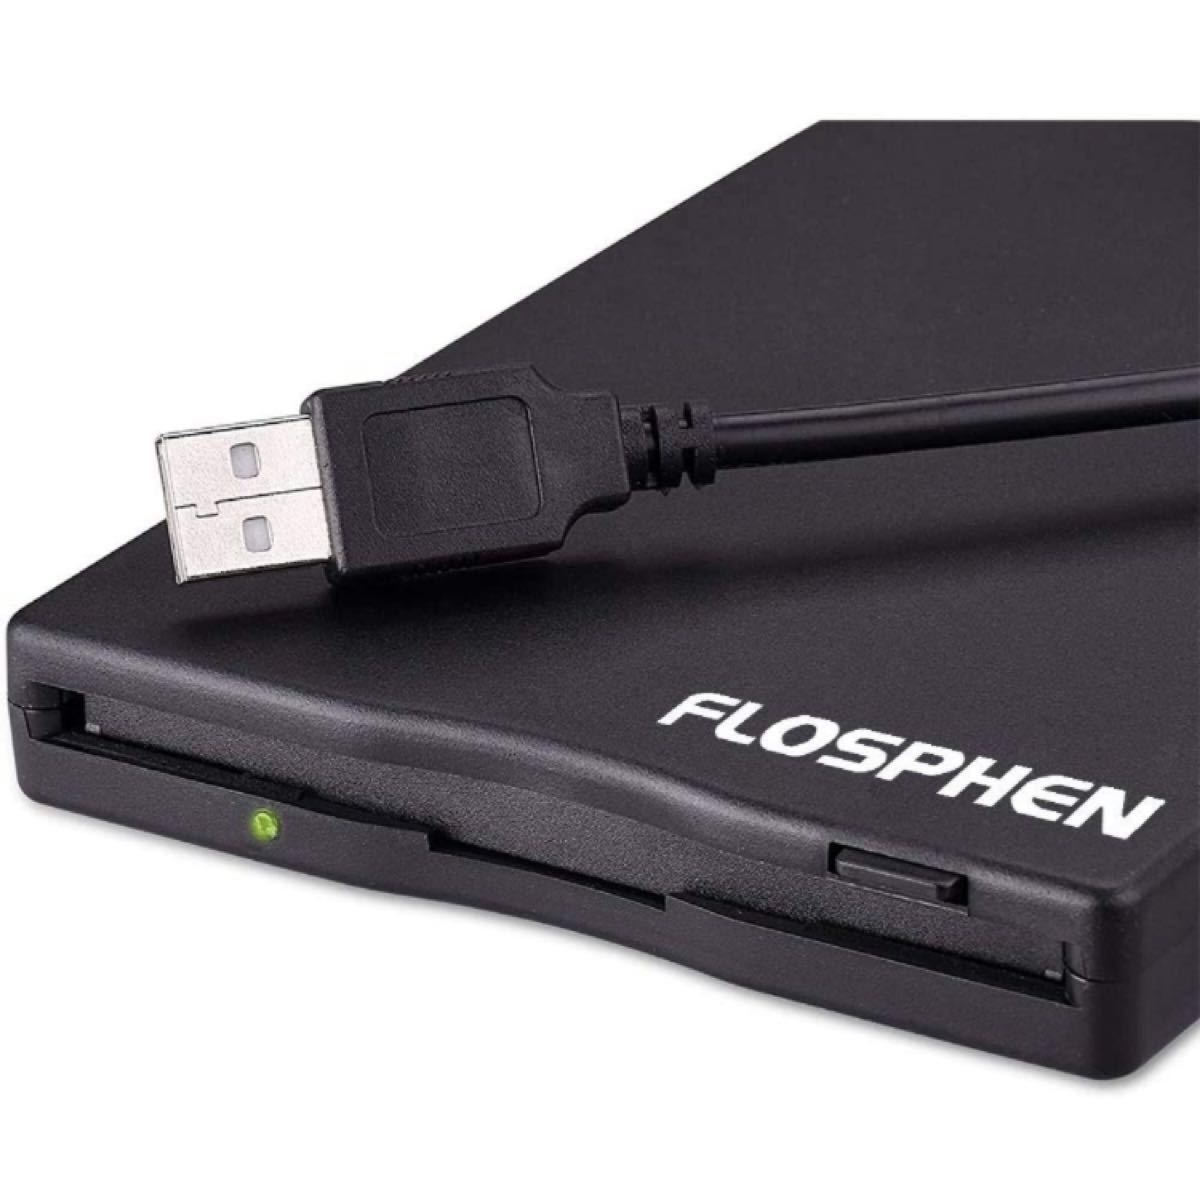 フロッピーディスクドライブusb外付け 3.5インチ1.44MB 2HD読み書きに対応可 